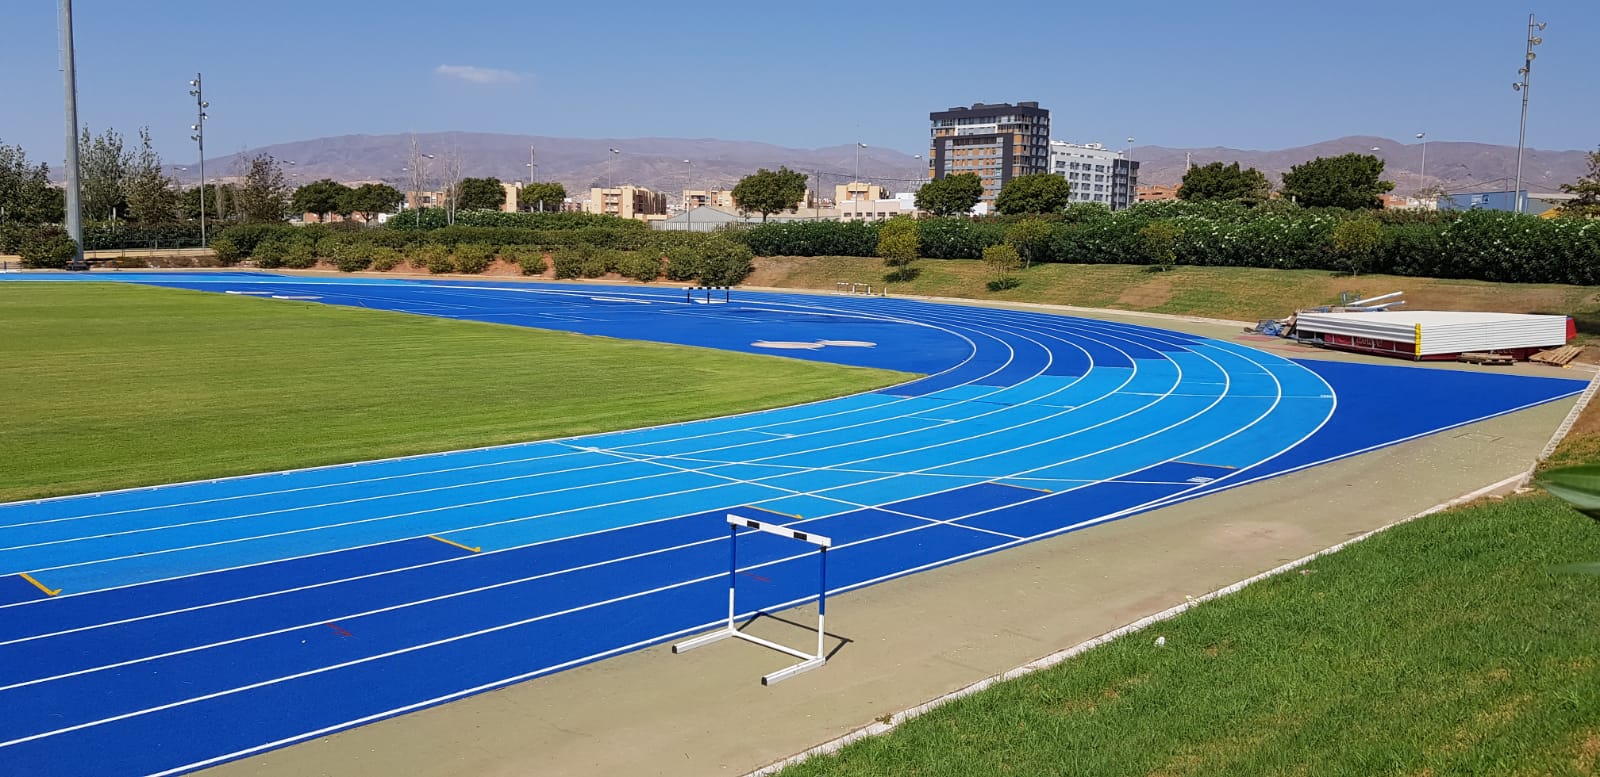 Pista Atletismo Anexo Estadio Juegos del Mediterráneo Image